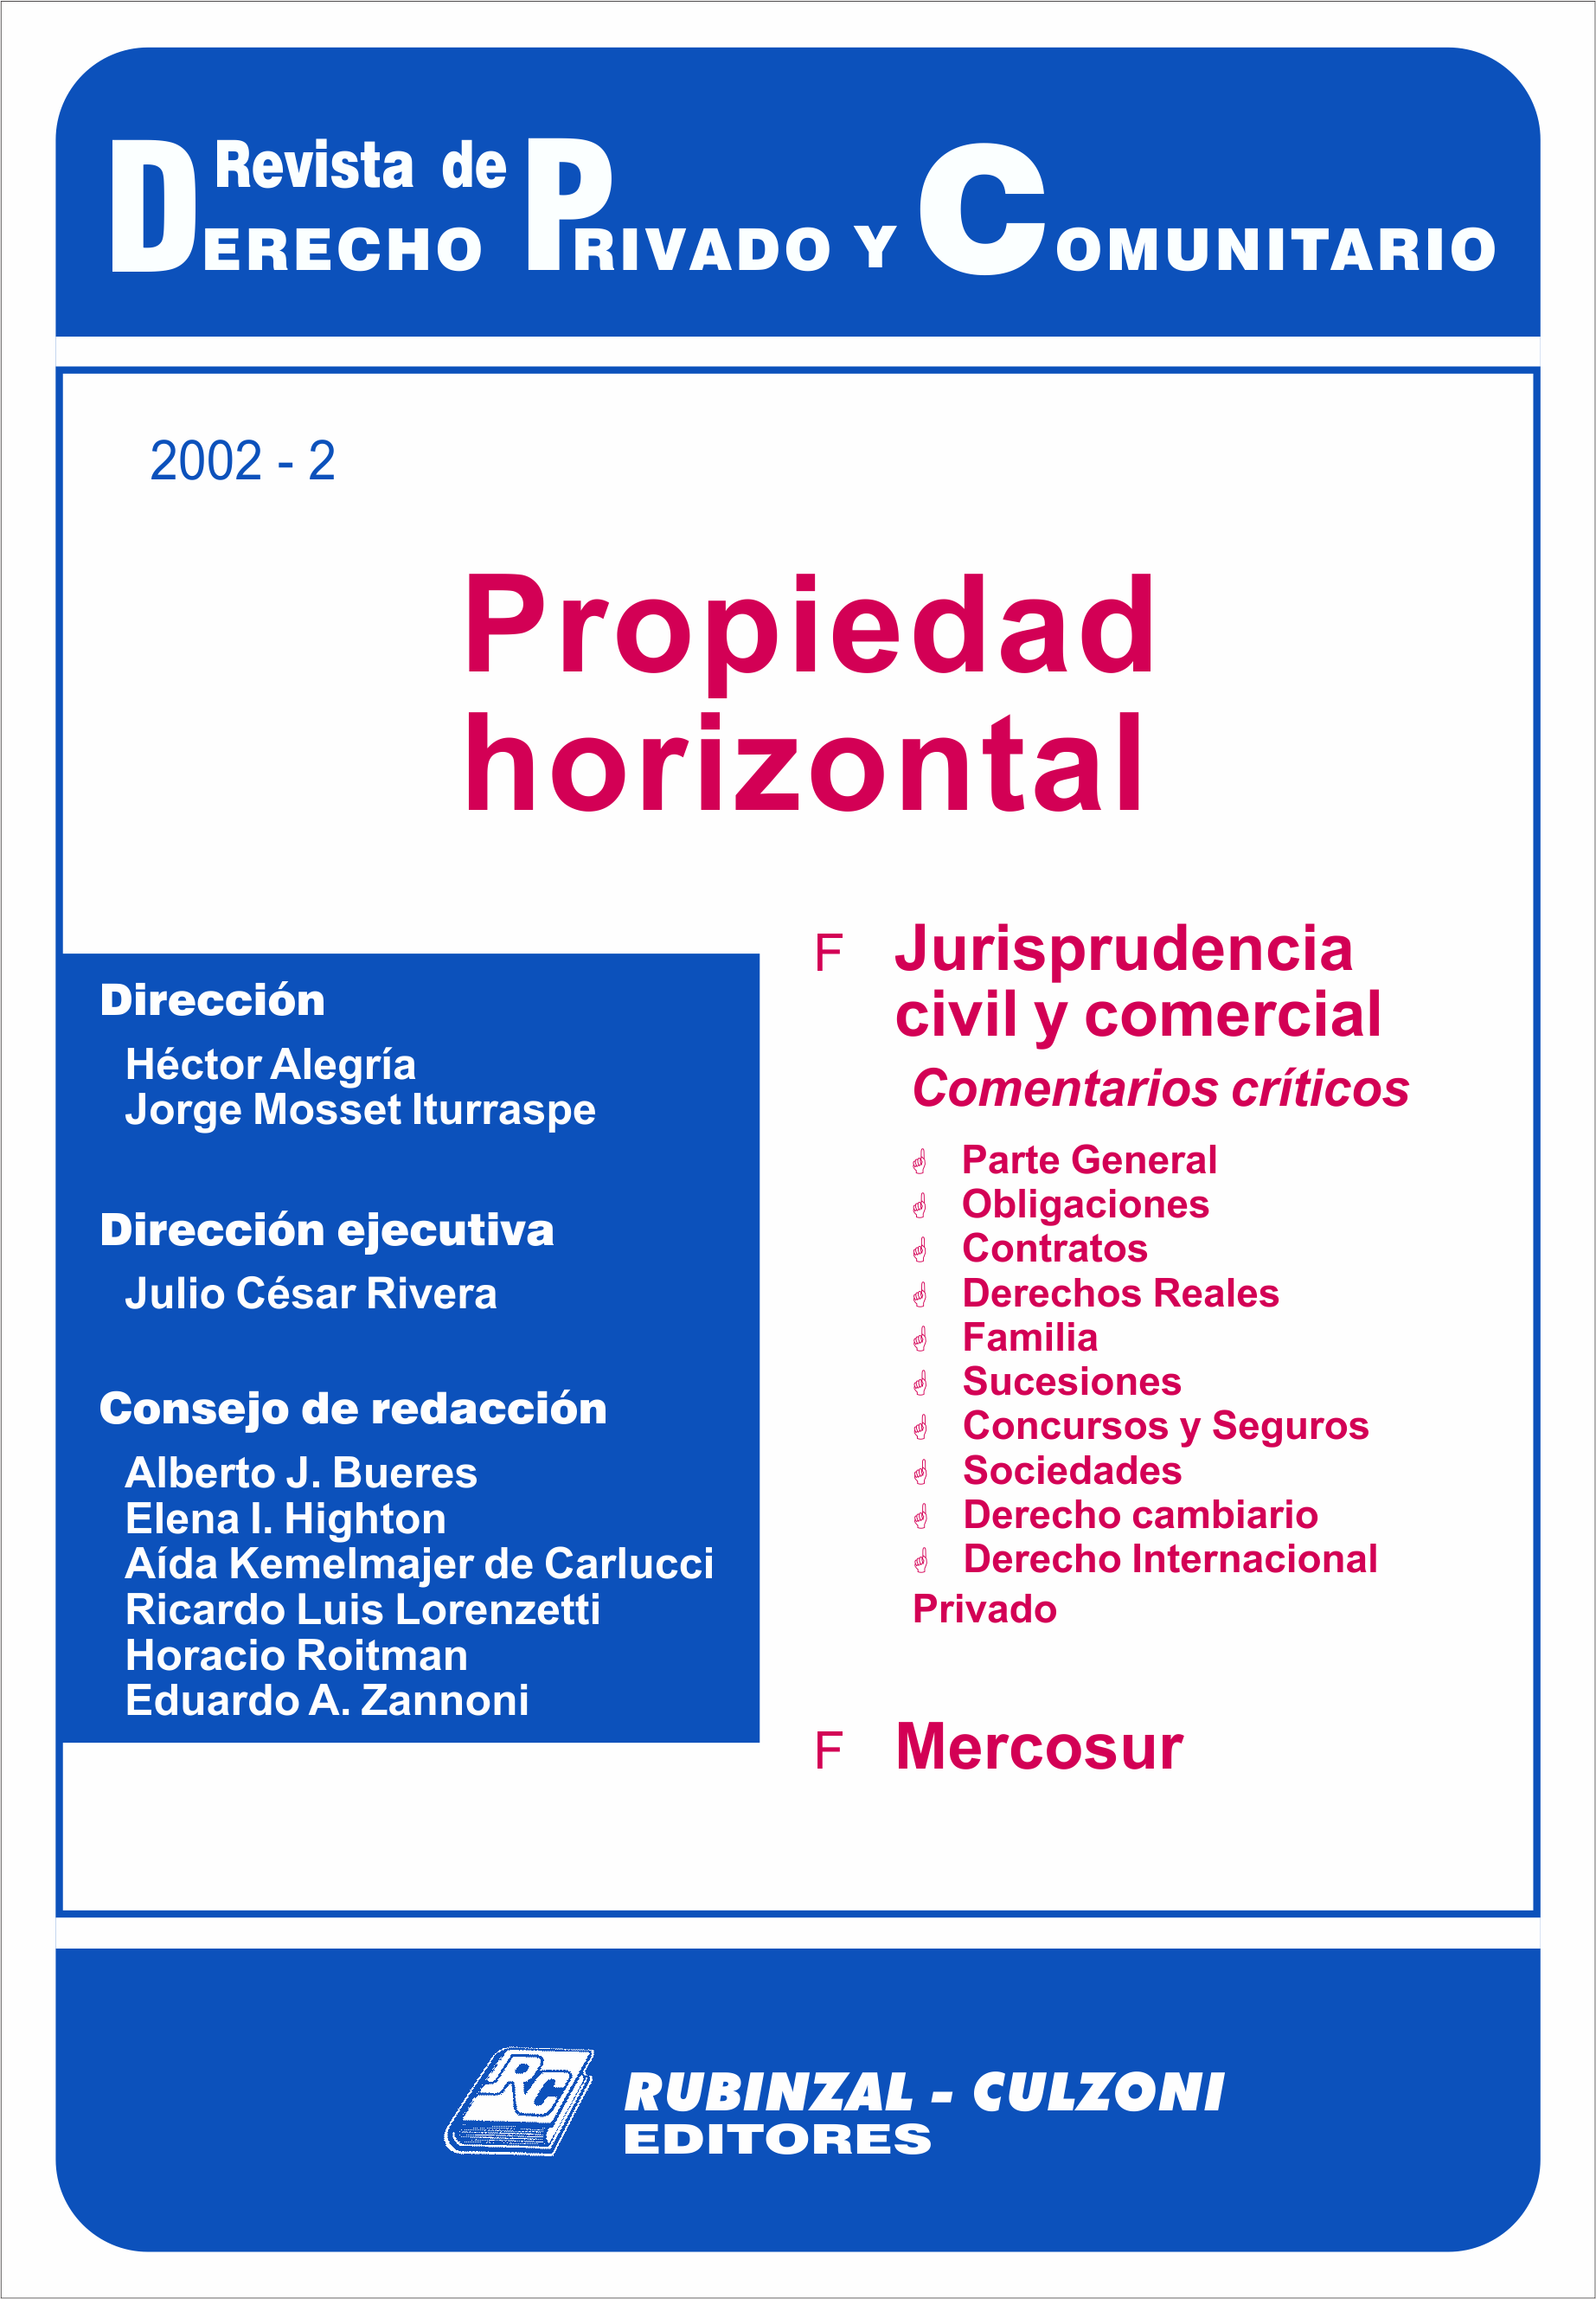 Revista de Derecho Privado y Comunitario - Propiedad horizontal.